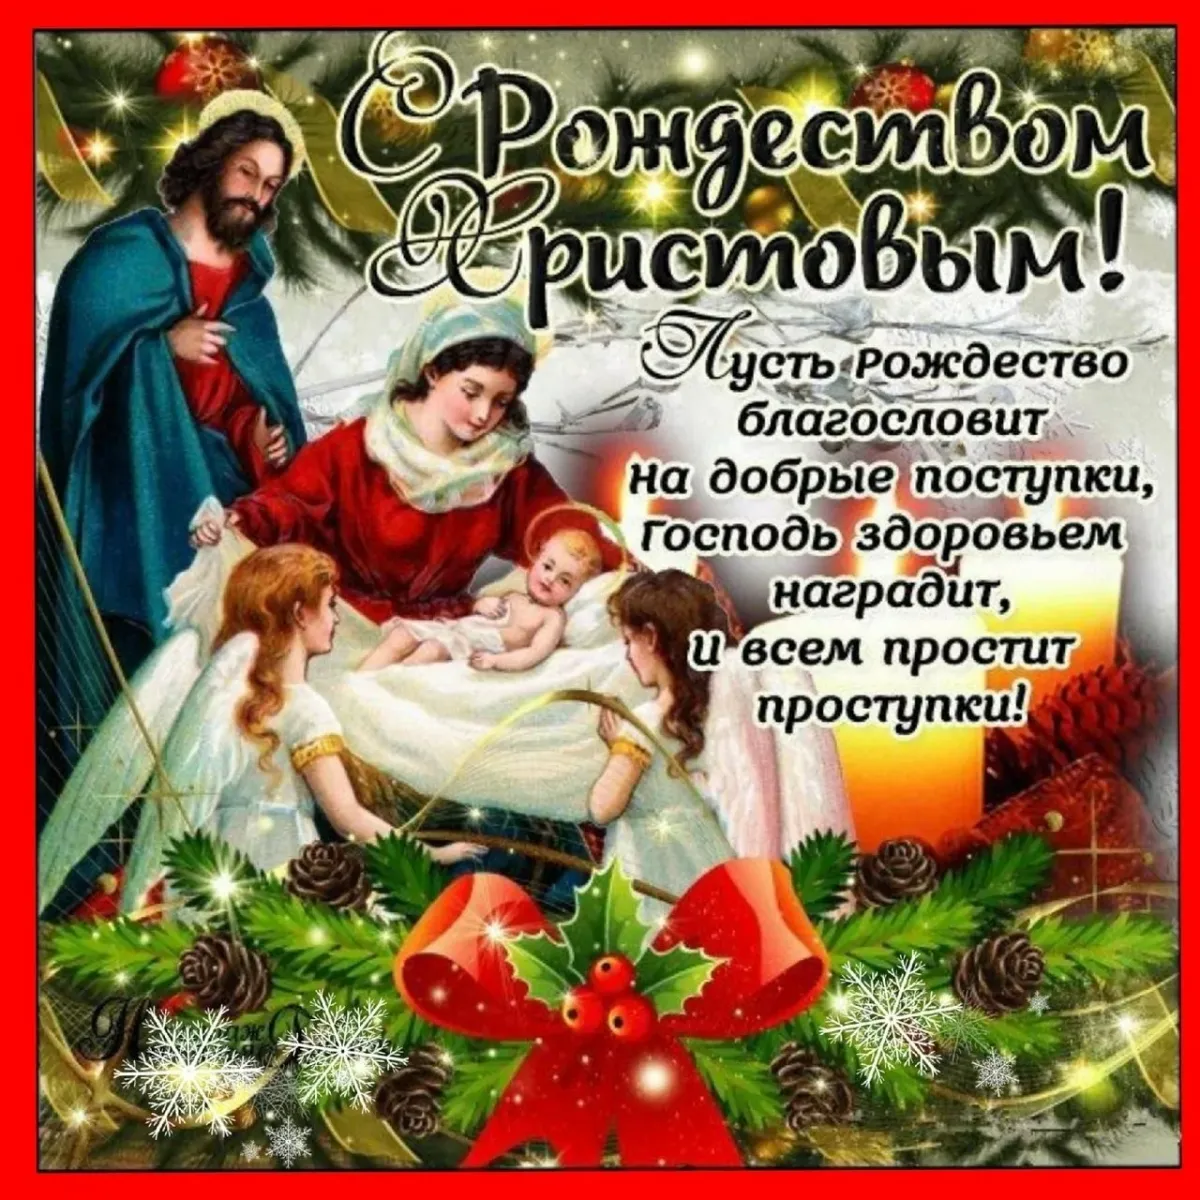 Что пожелать на рождество своими словами. Поздравление с Рождеством. С Рождеством Христовым поздравления. С Рождеством картинки поздравления. Поздравления с Сочельником и Рождеством Христовым.